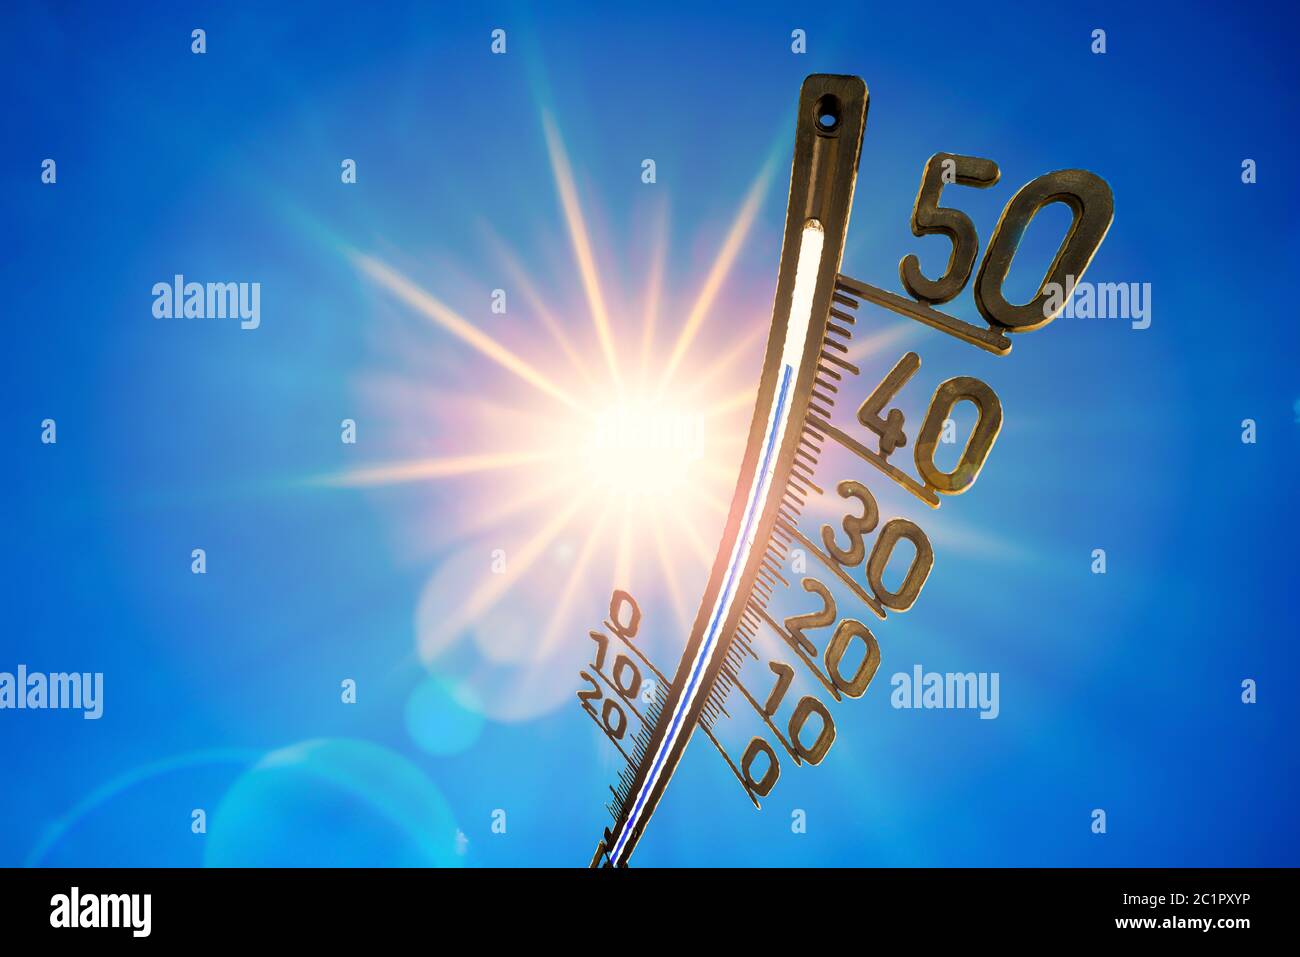 Heißer Sommer oder Hitzewelle Hintergrund, helle Sonne auf blauem Himmel mit Thermometer Stockfoto